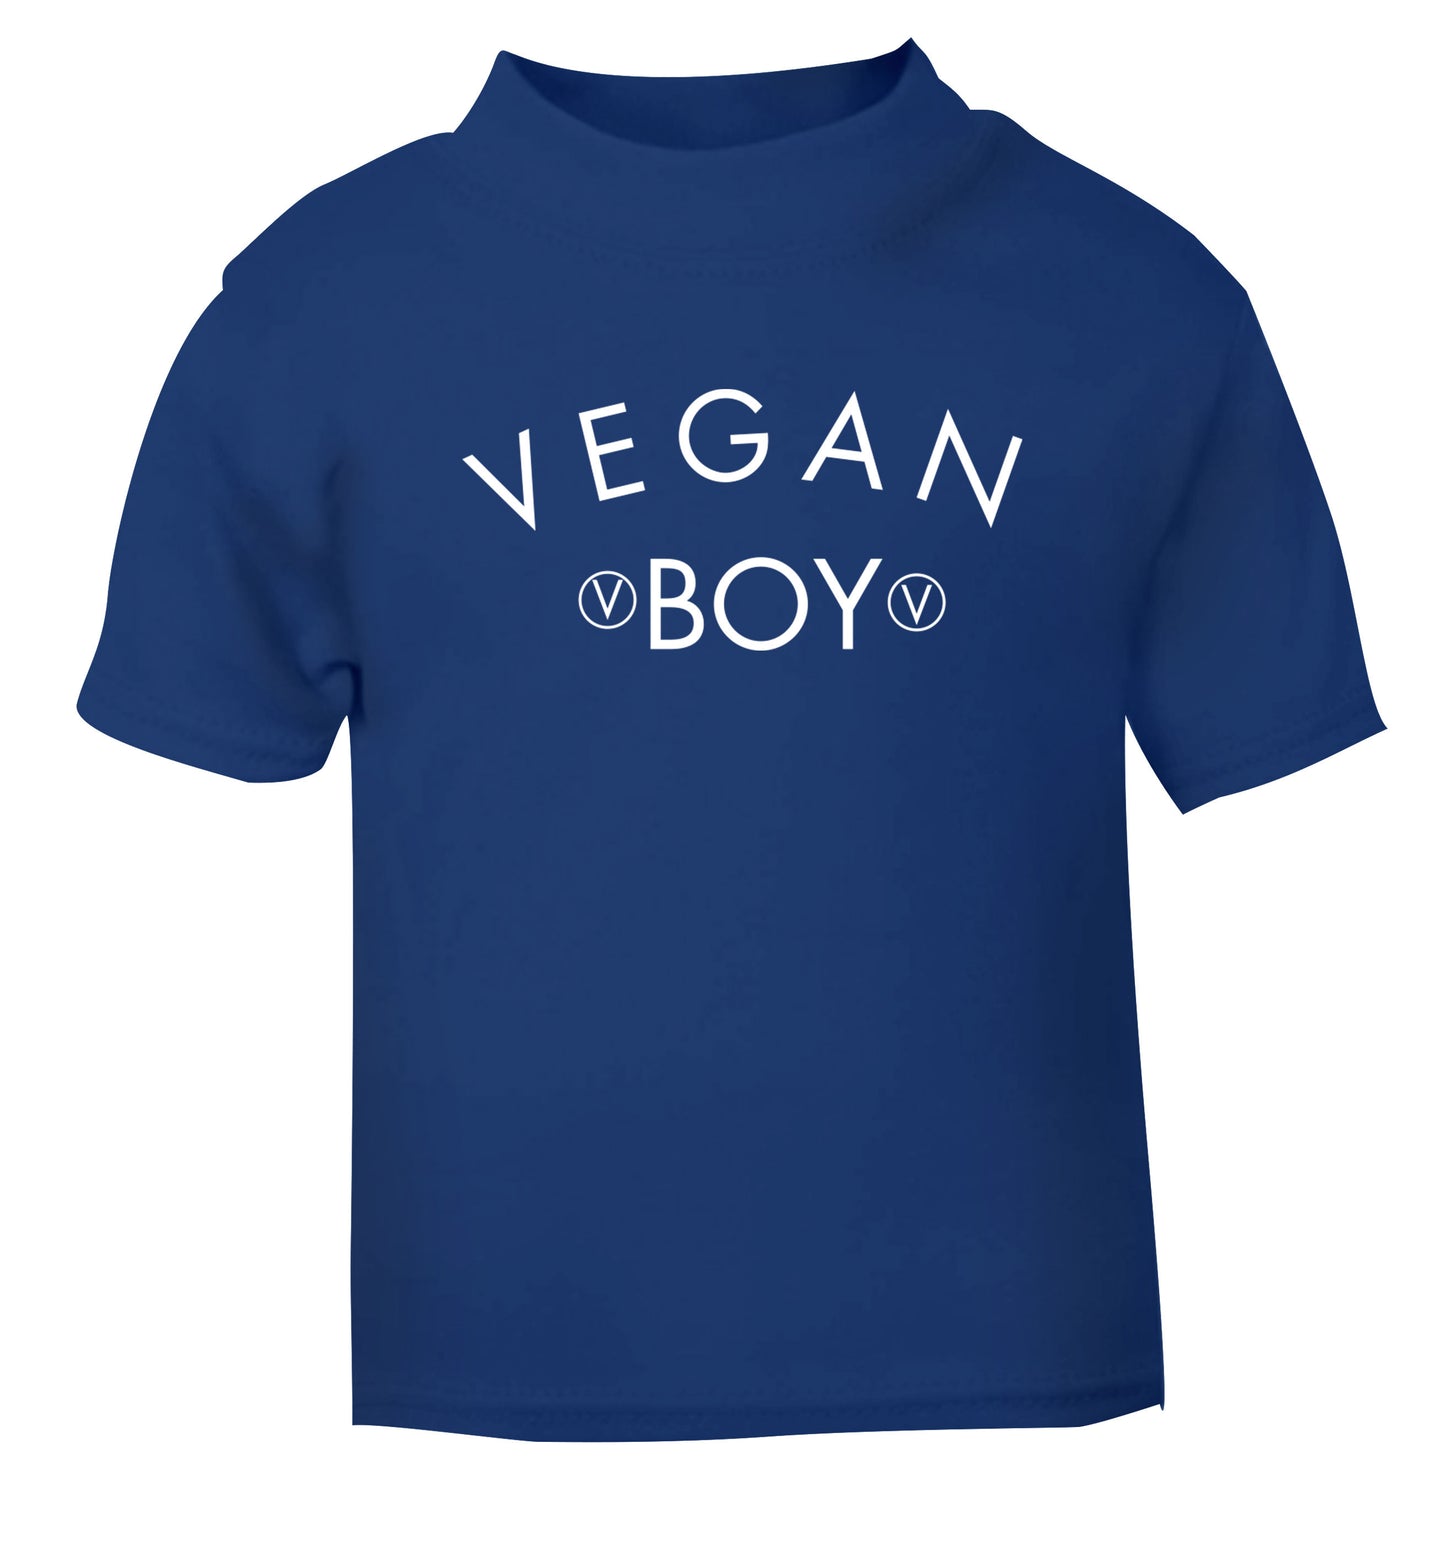 Vegan boy blue Baby Toddler Tshirt 2 Years